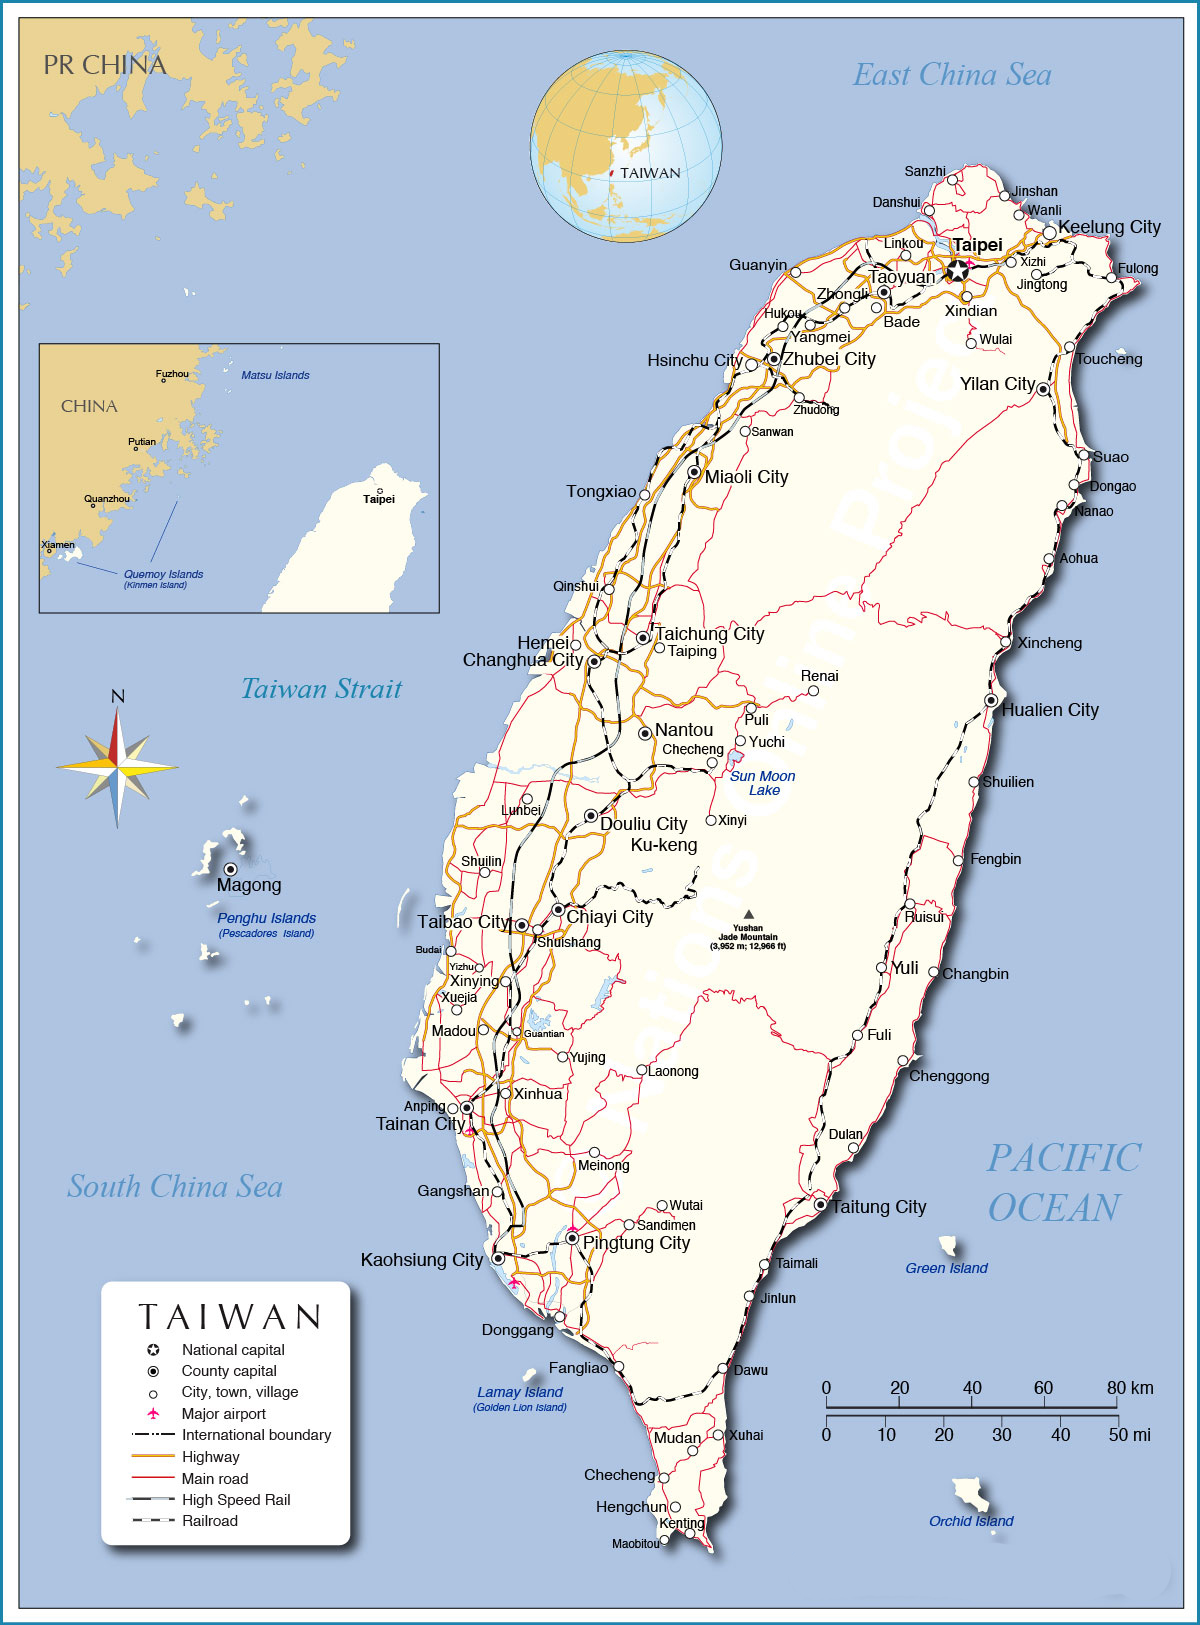 Hãy khám phá bản đồ Đài Loan năm 2024 với những thay đổi hấp dẫn và đầy chất lượng về dân số, kinh tế, du lịch và hạ tầng. Đài Loan đã sẵn sàng đón chào bạn đến với những trải nghiệm mới, đầy phong cảnh tuyệt đẹp và sự tiến bộ trong mọi lĩnh vực.